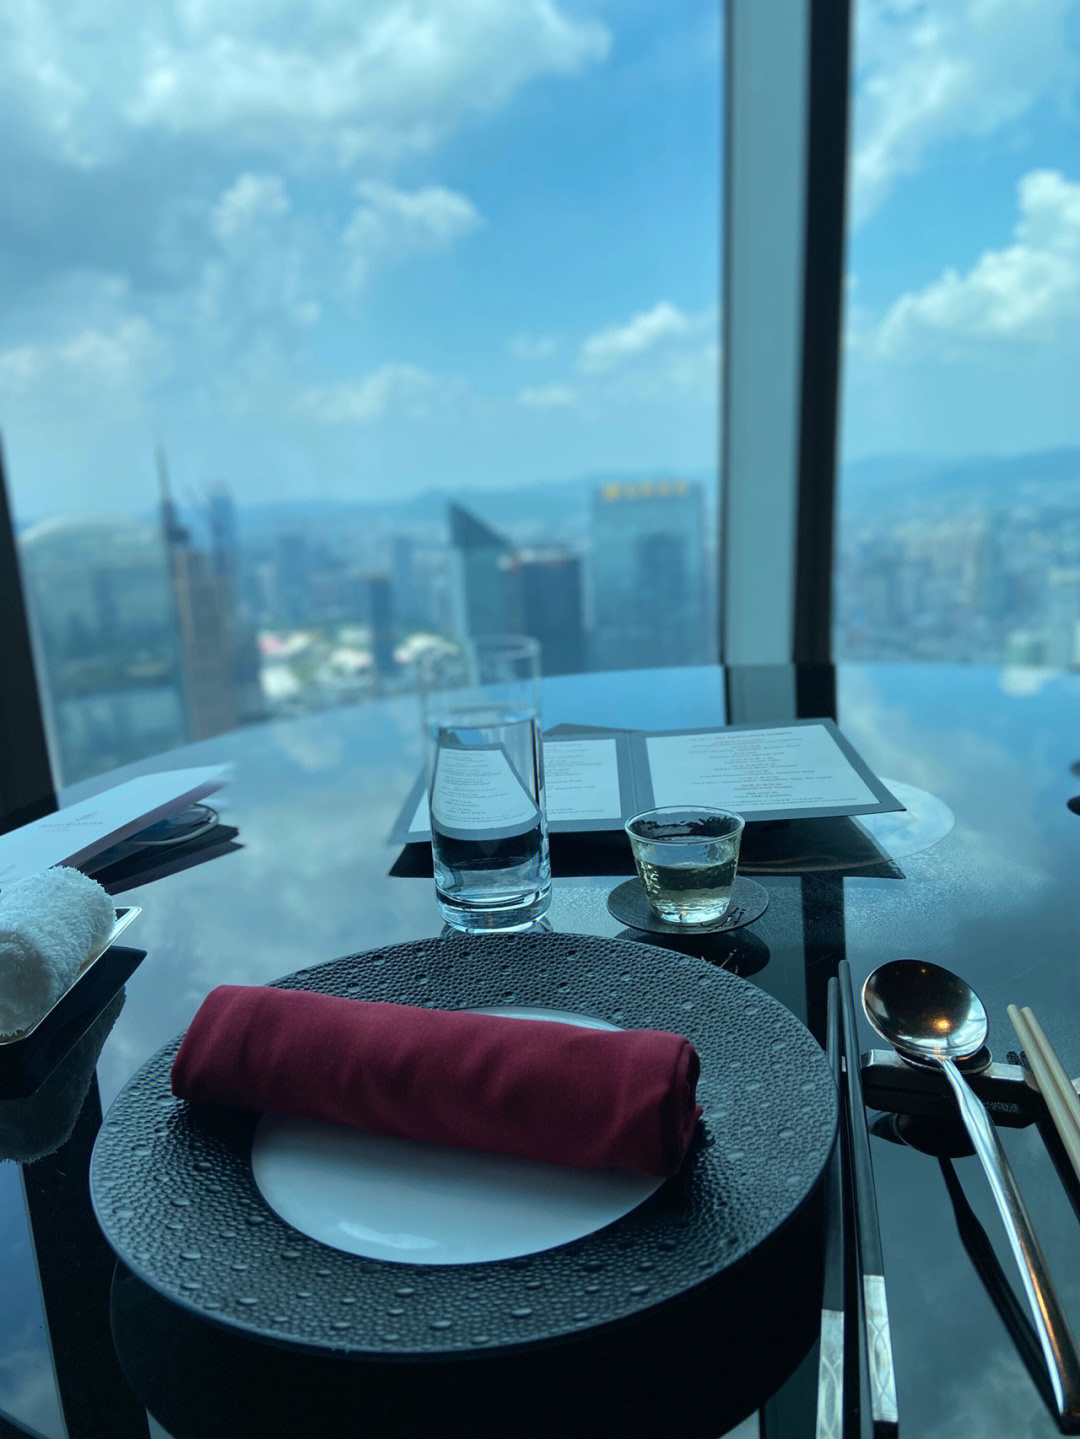 广州四季酒店100层餐厅图片